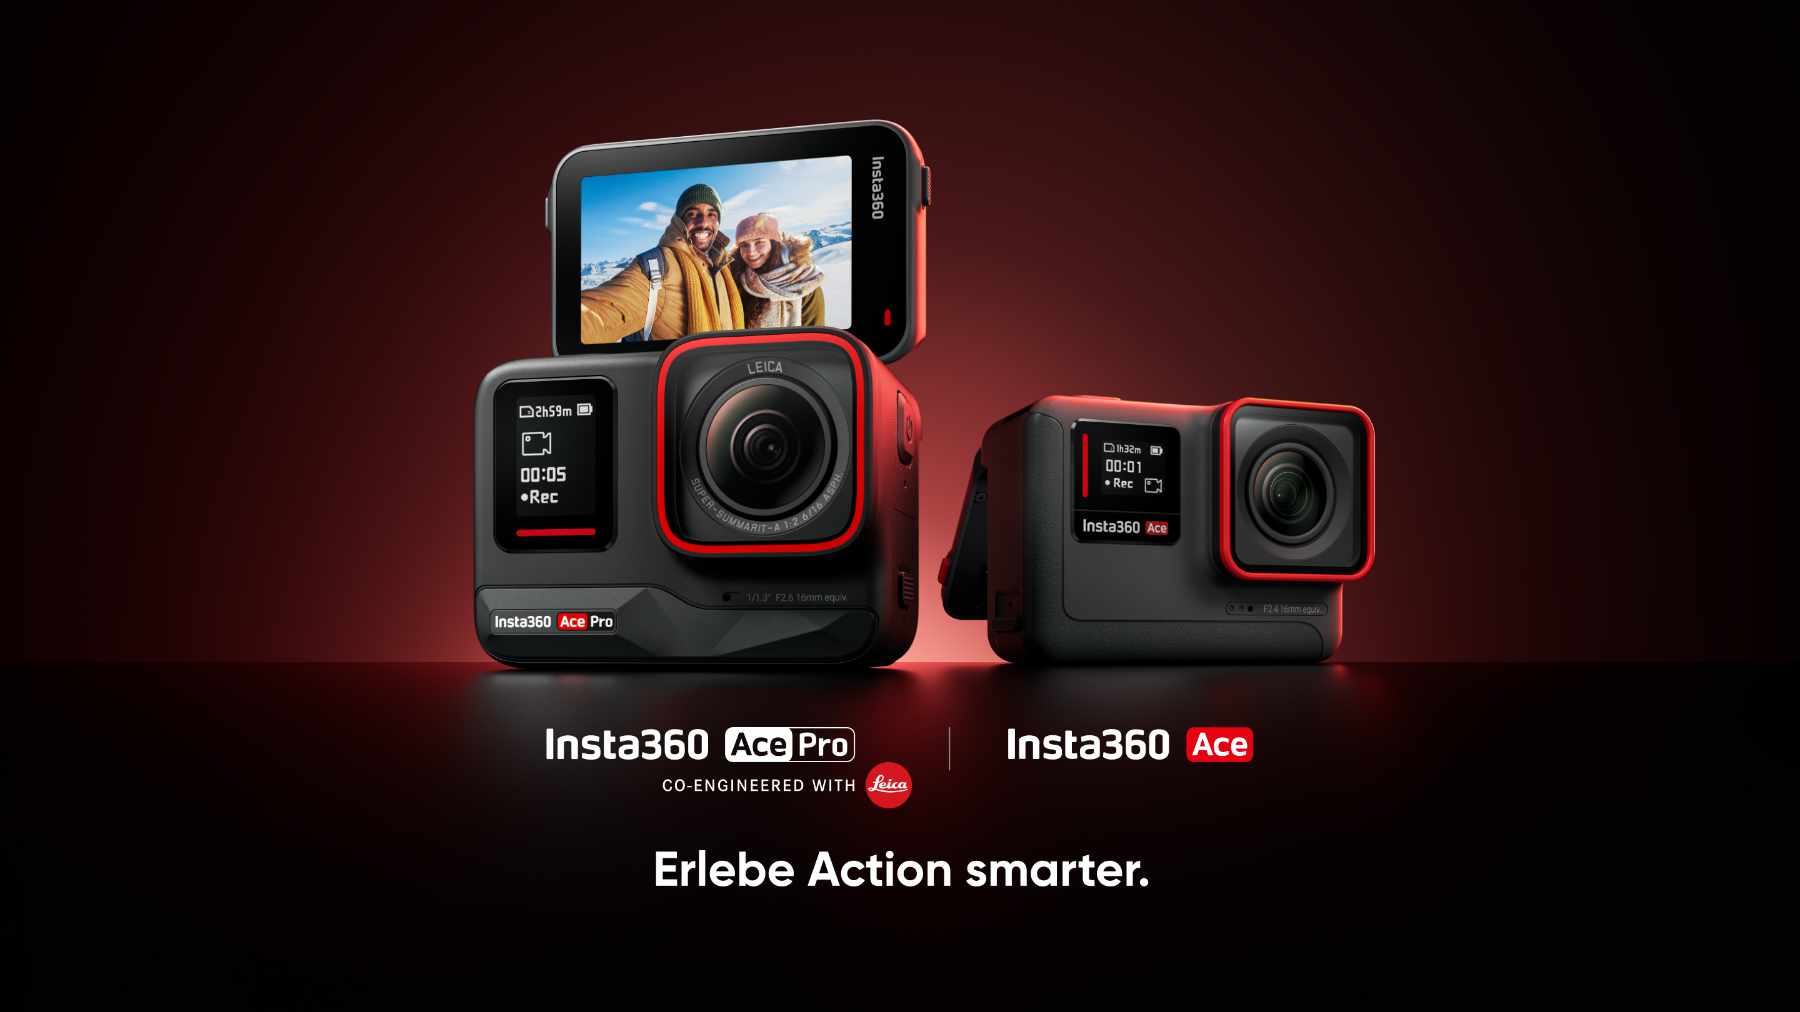 Zwei Insta360 Pro: vorgestellt neue Ace Actionkameras und Ace